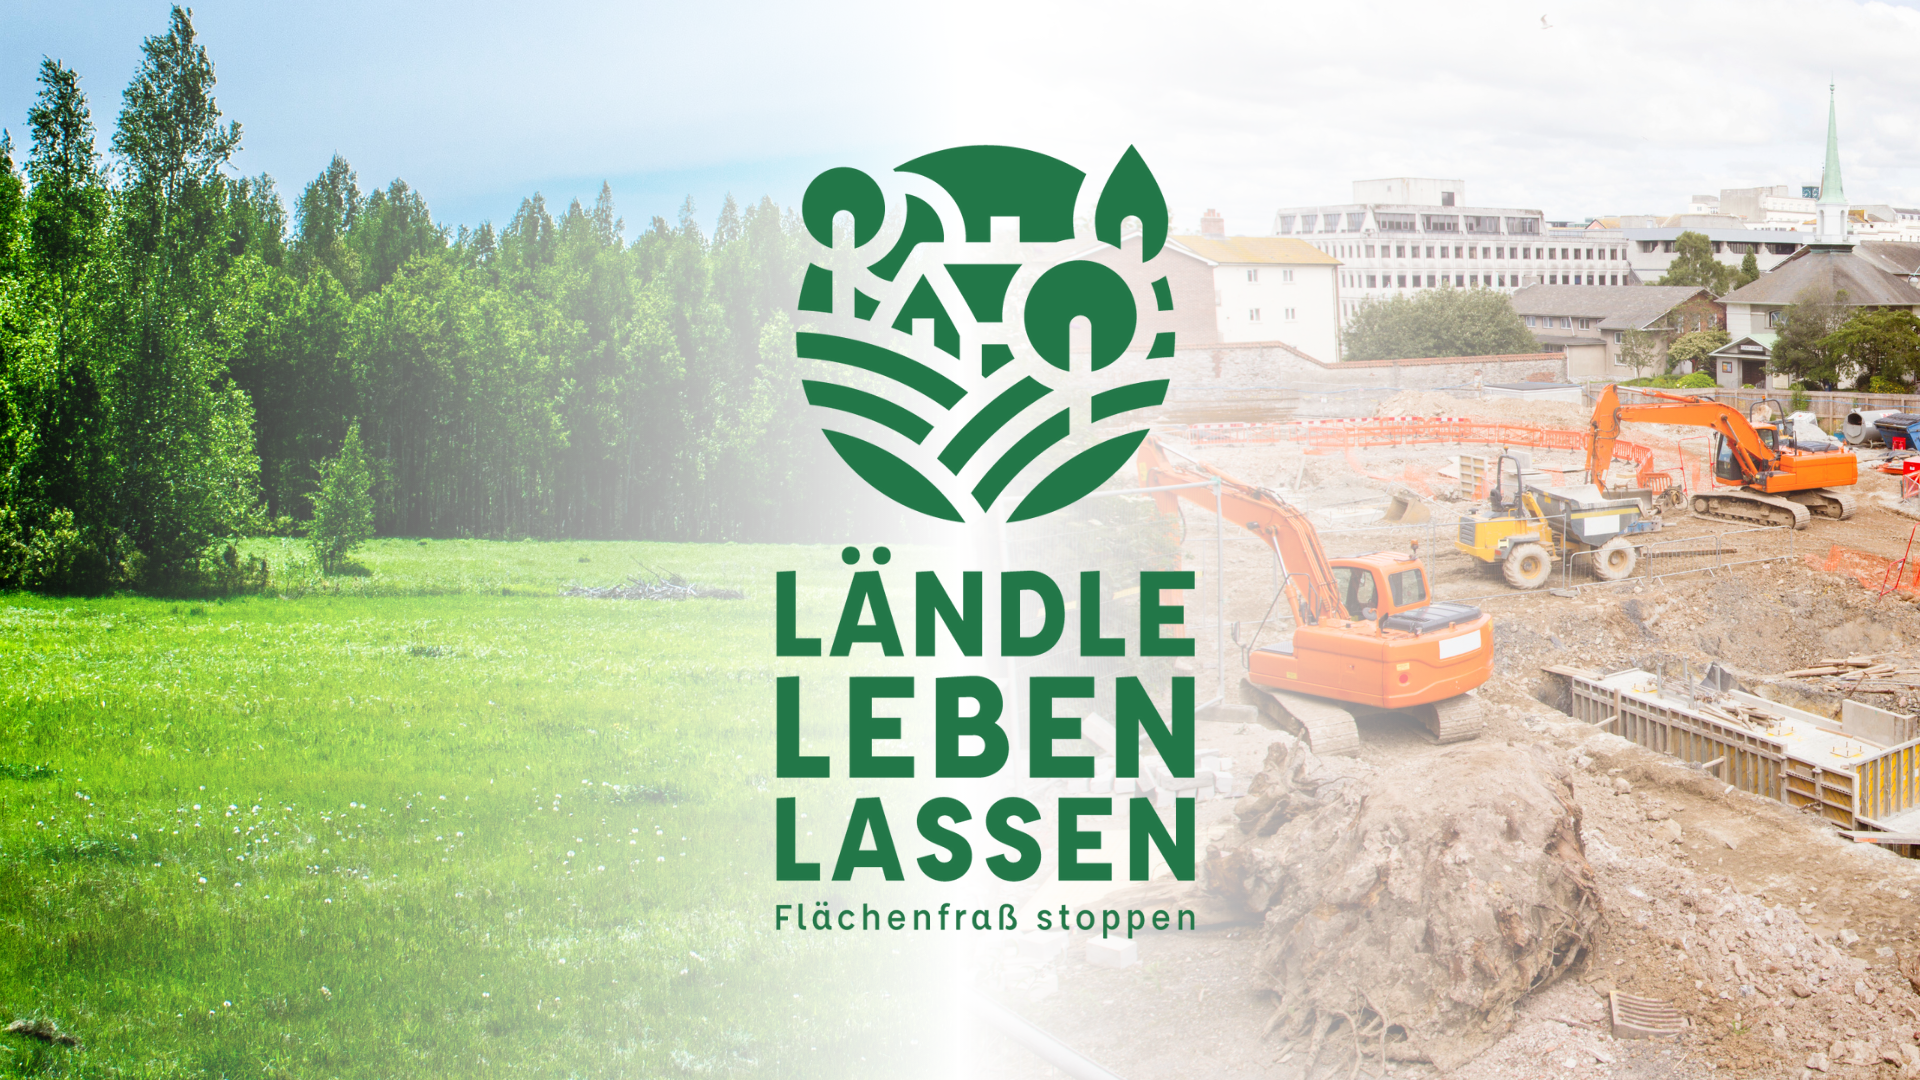 Ländle leben lassen - Volksantrag gegen den Flächenfraß in Baden-Württemberg